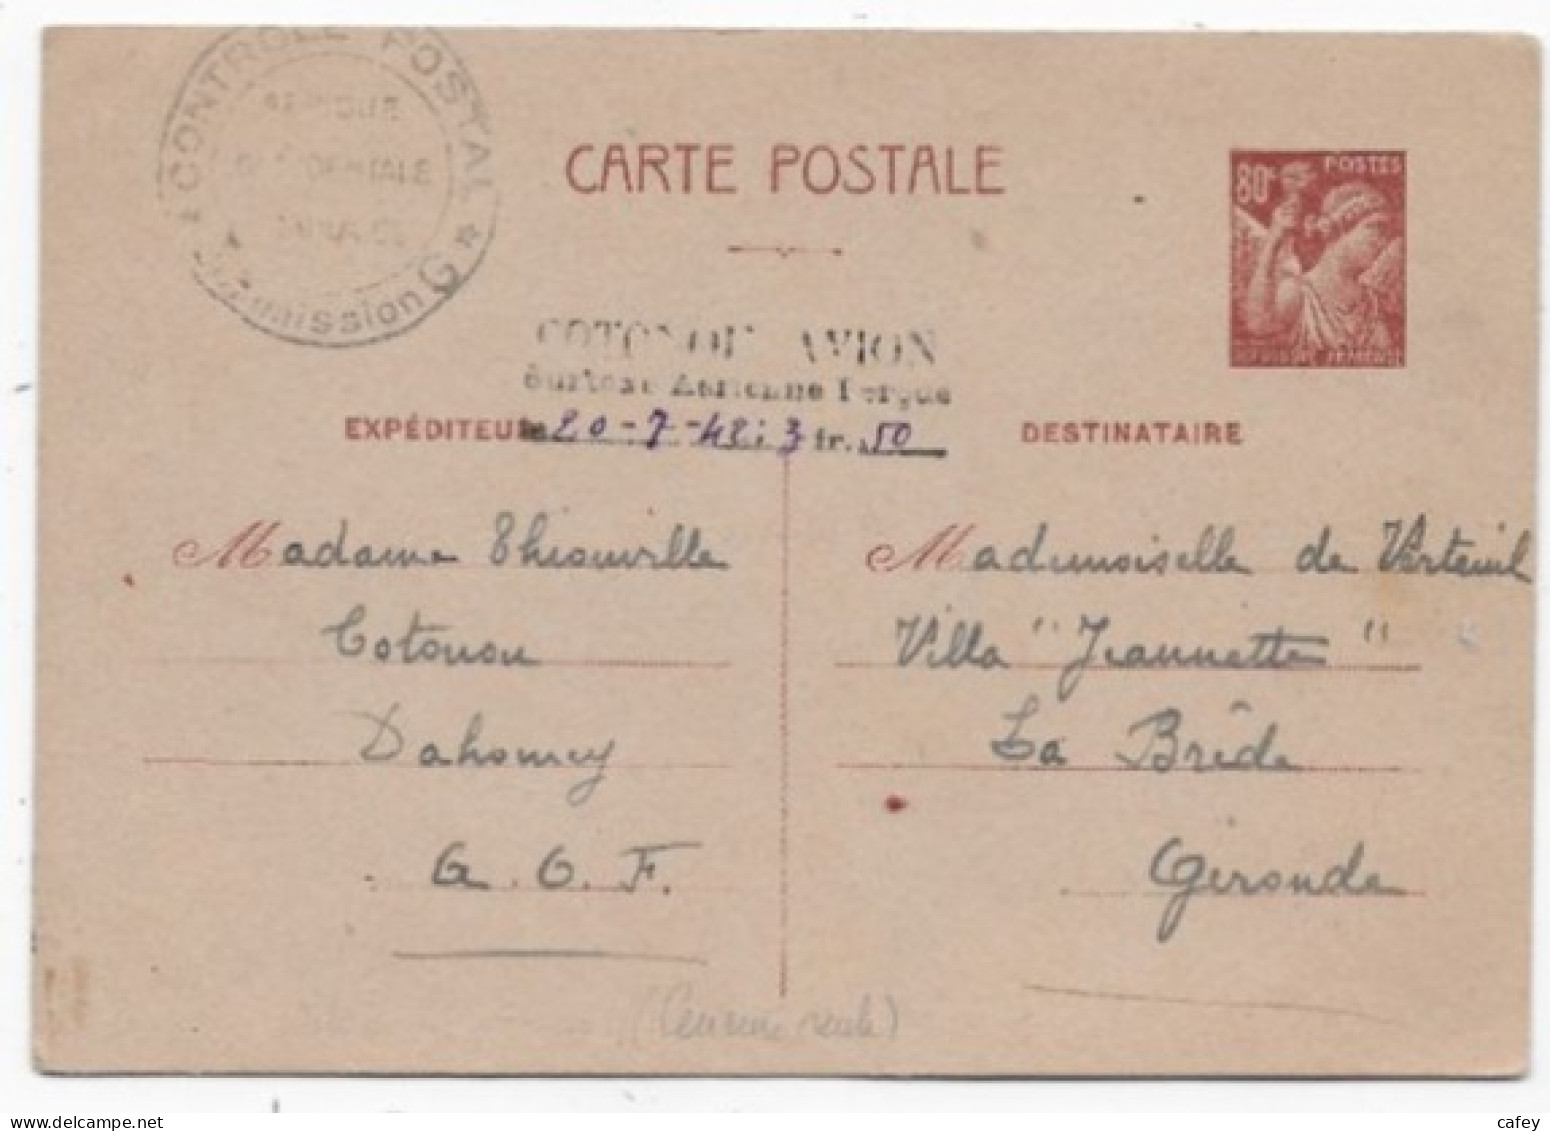 Carte Entier IRIS Utilisation Extérieure Griffe COTONOU AVION / SURTAXE AERIENNE PERCUE / 3F50 + Censure Commission G - 2. Weltkrieg 1939-1945